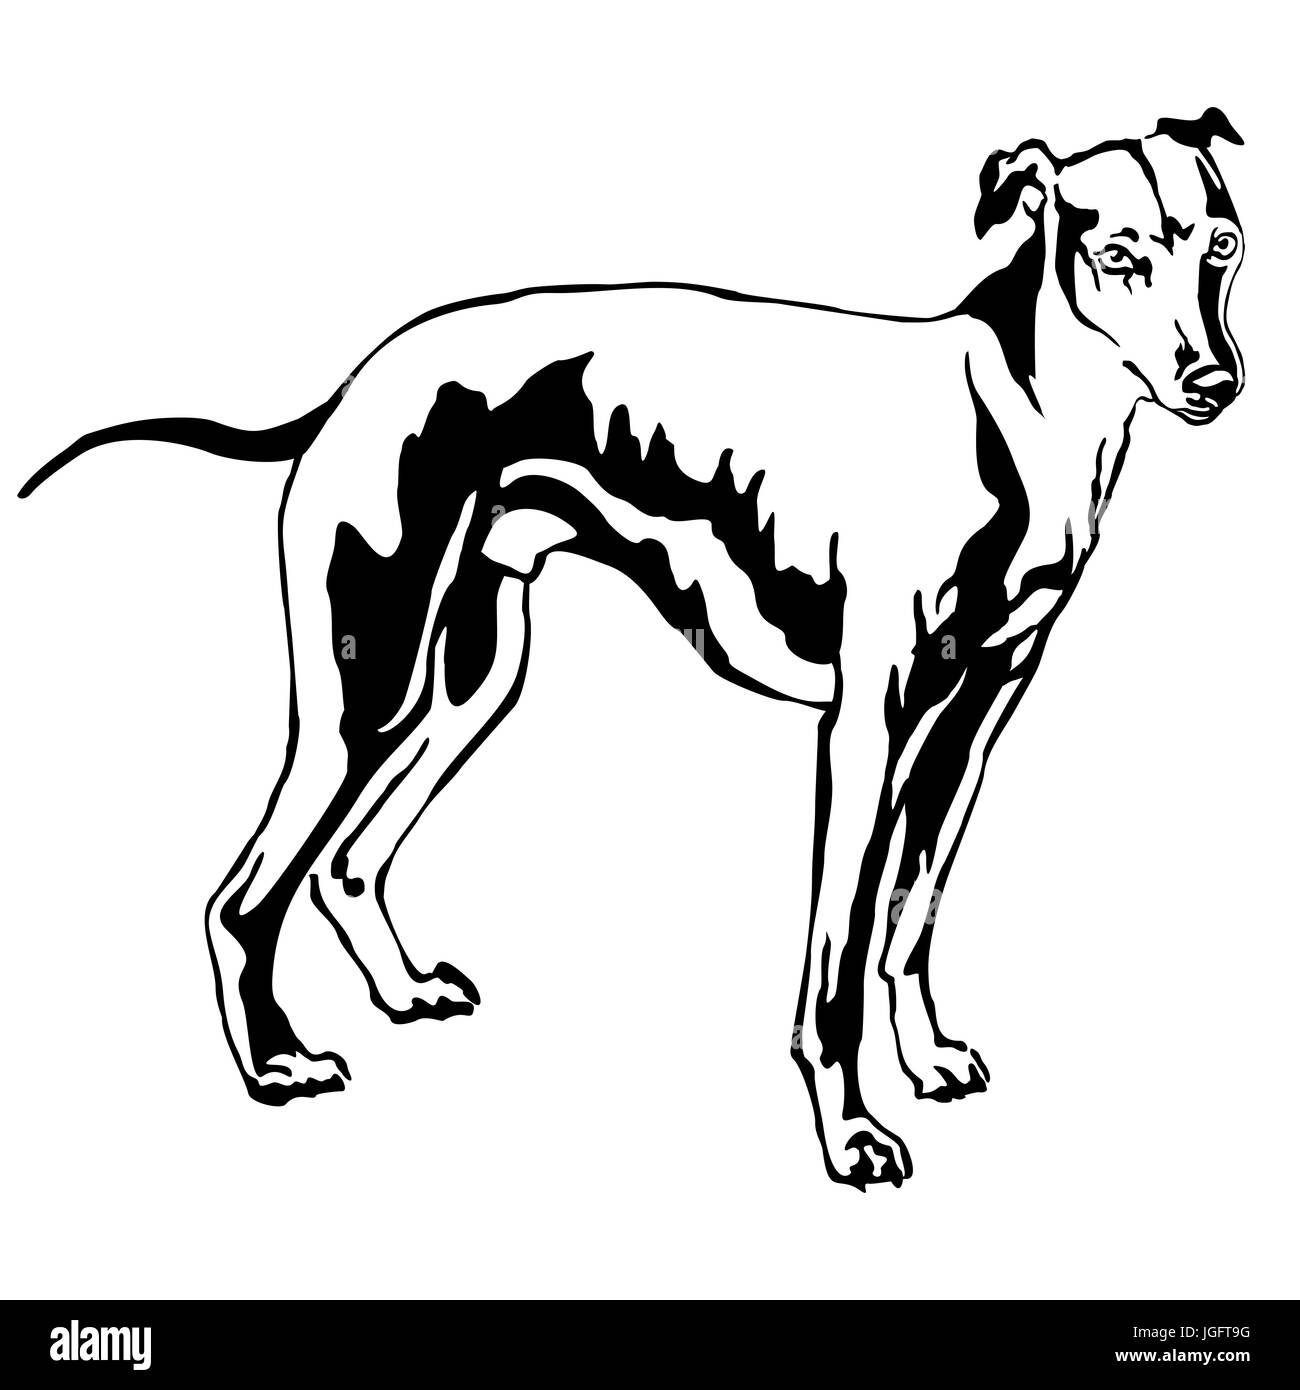 Dekoratives Porträt von stehen im Profil Hund Whippet (Anblick Bracke), Vektor-isolierte Illustration in schwarzer Farbe auf weißem Hintergrund Stock Vektor